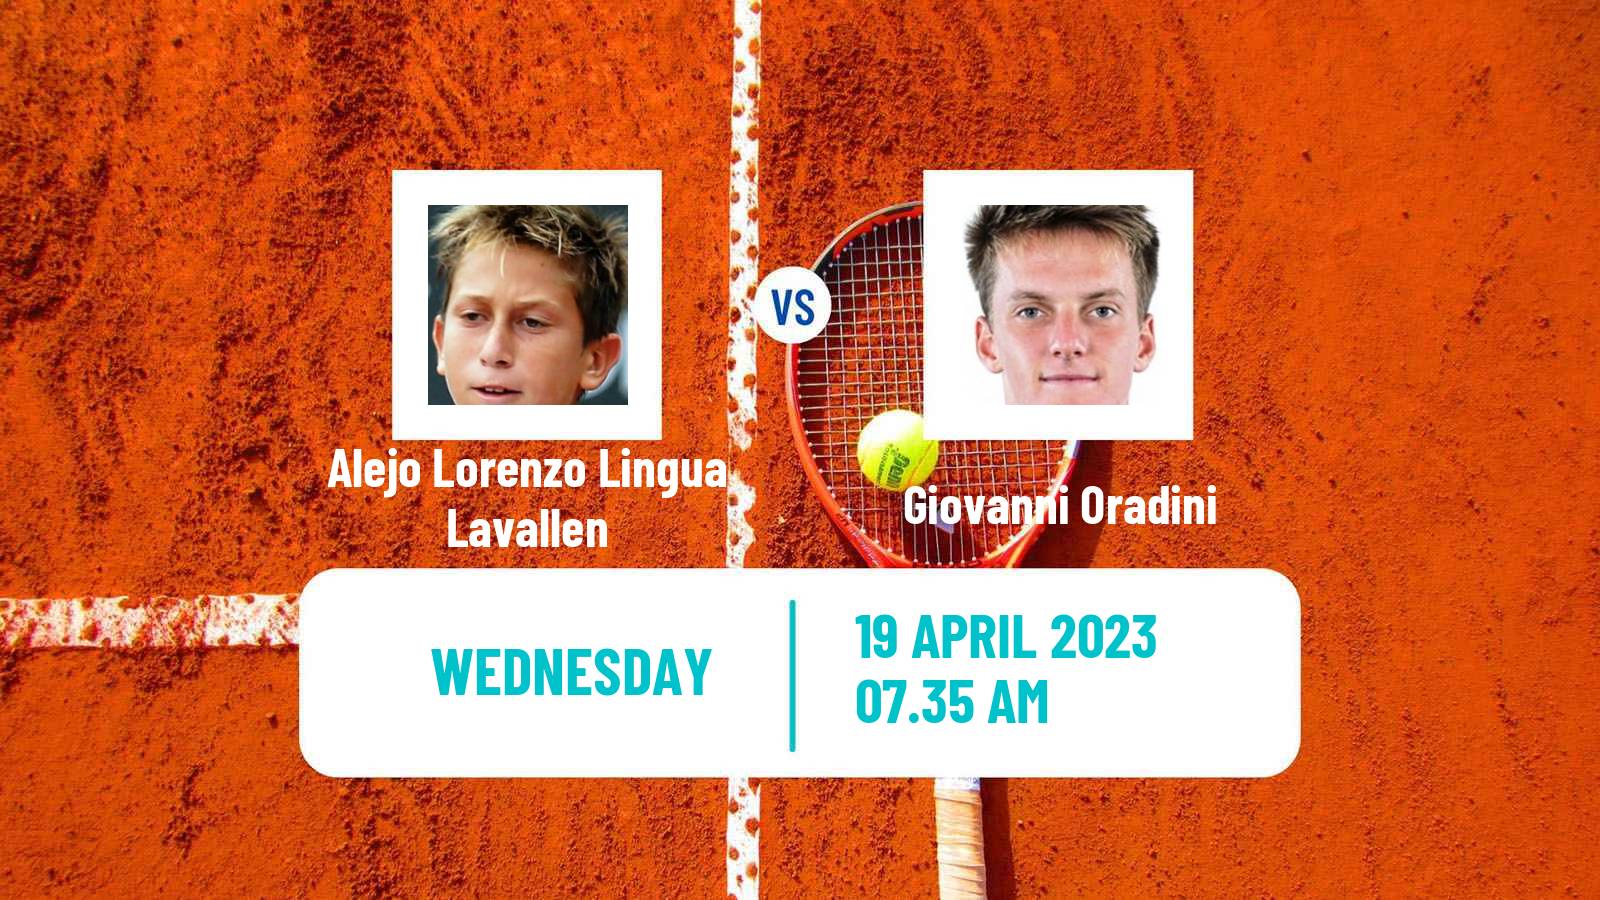 Tennis ITF Tournaments Alejo Lorenzo Lingua Lavallen - Giovanni Oradini